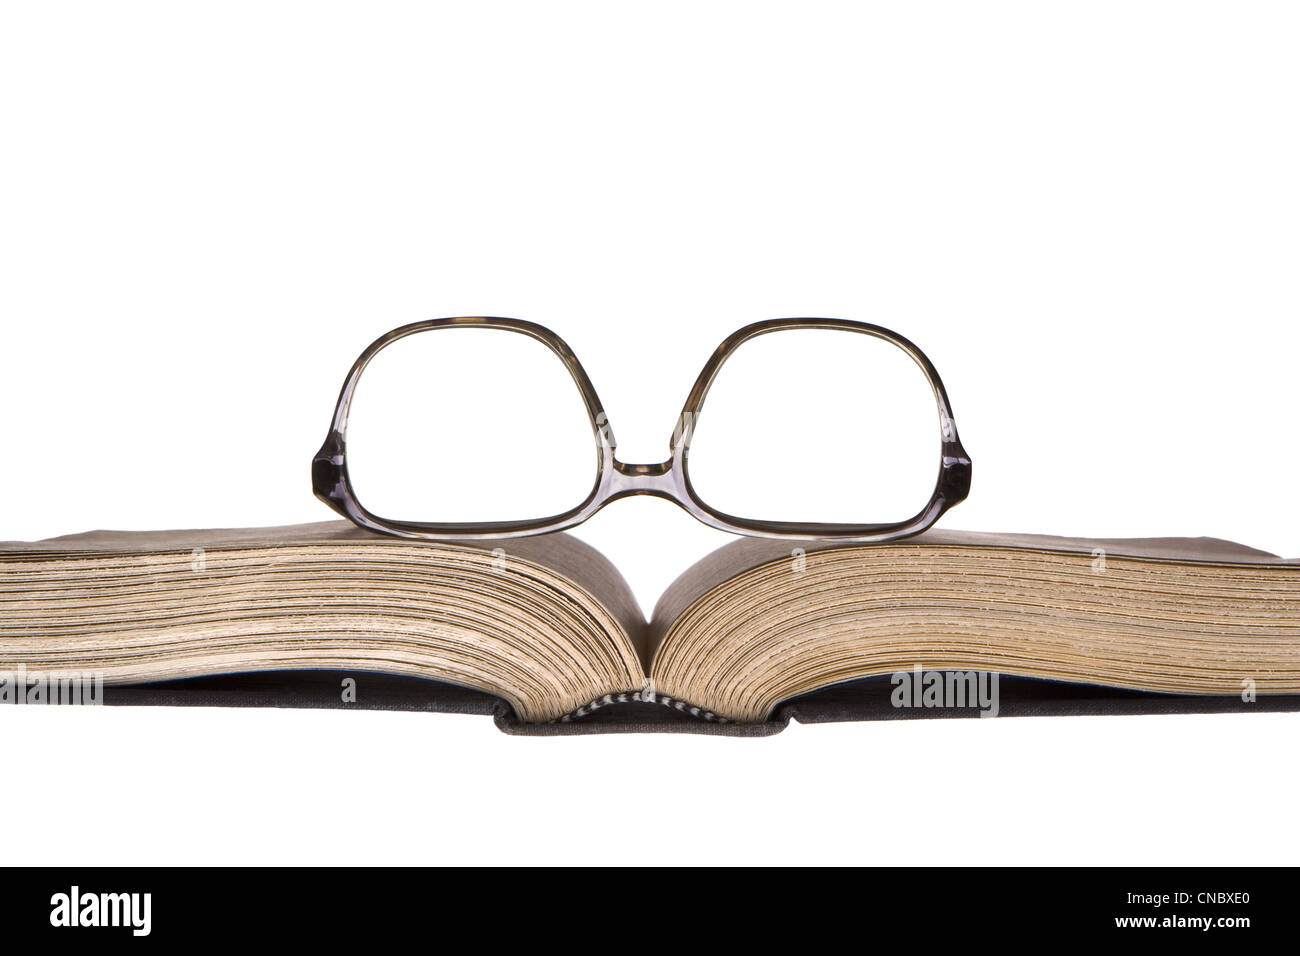 Alte, Upside-Down-Brillen in Kunststoff-Rahmen ruht auf alte, vergilbte offenes Buch. Horizontale Frontalansicht. Isoliert auf weiss. Stockfoto